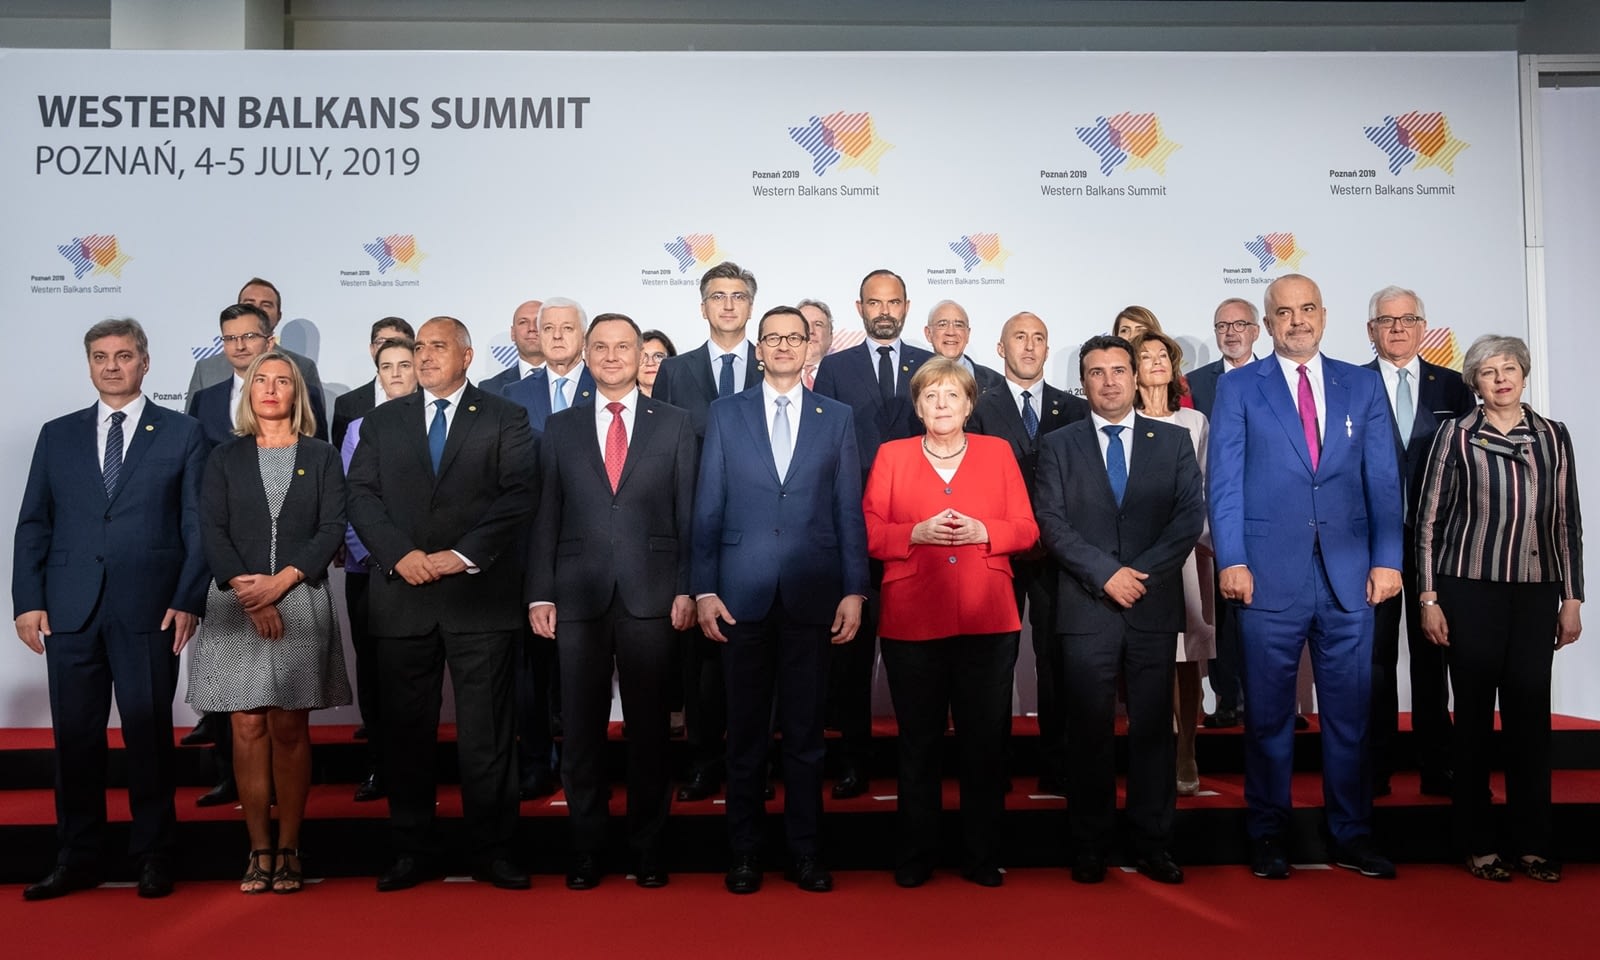 Szczyt Bałkanów Zachodnich 2019 Brill AV Media